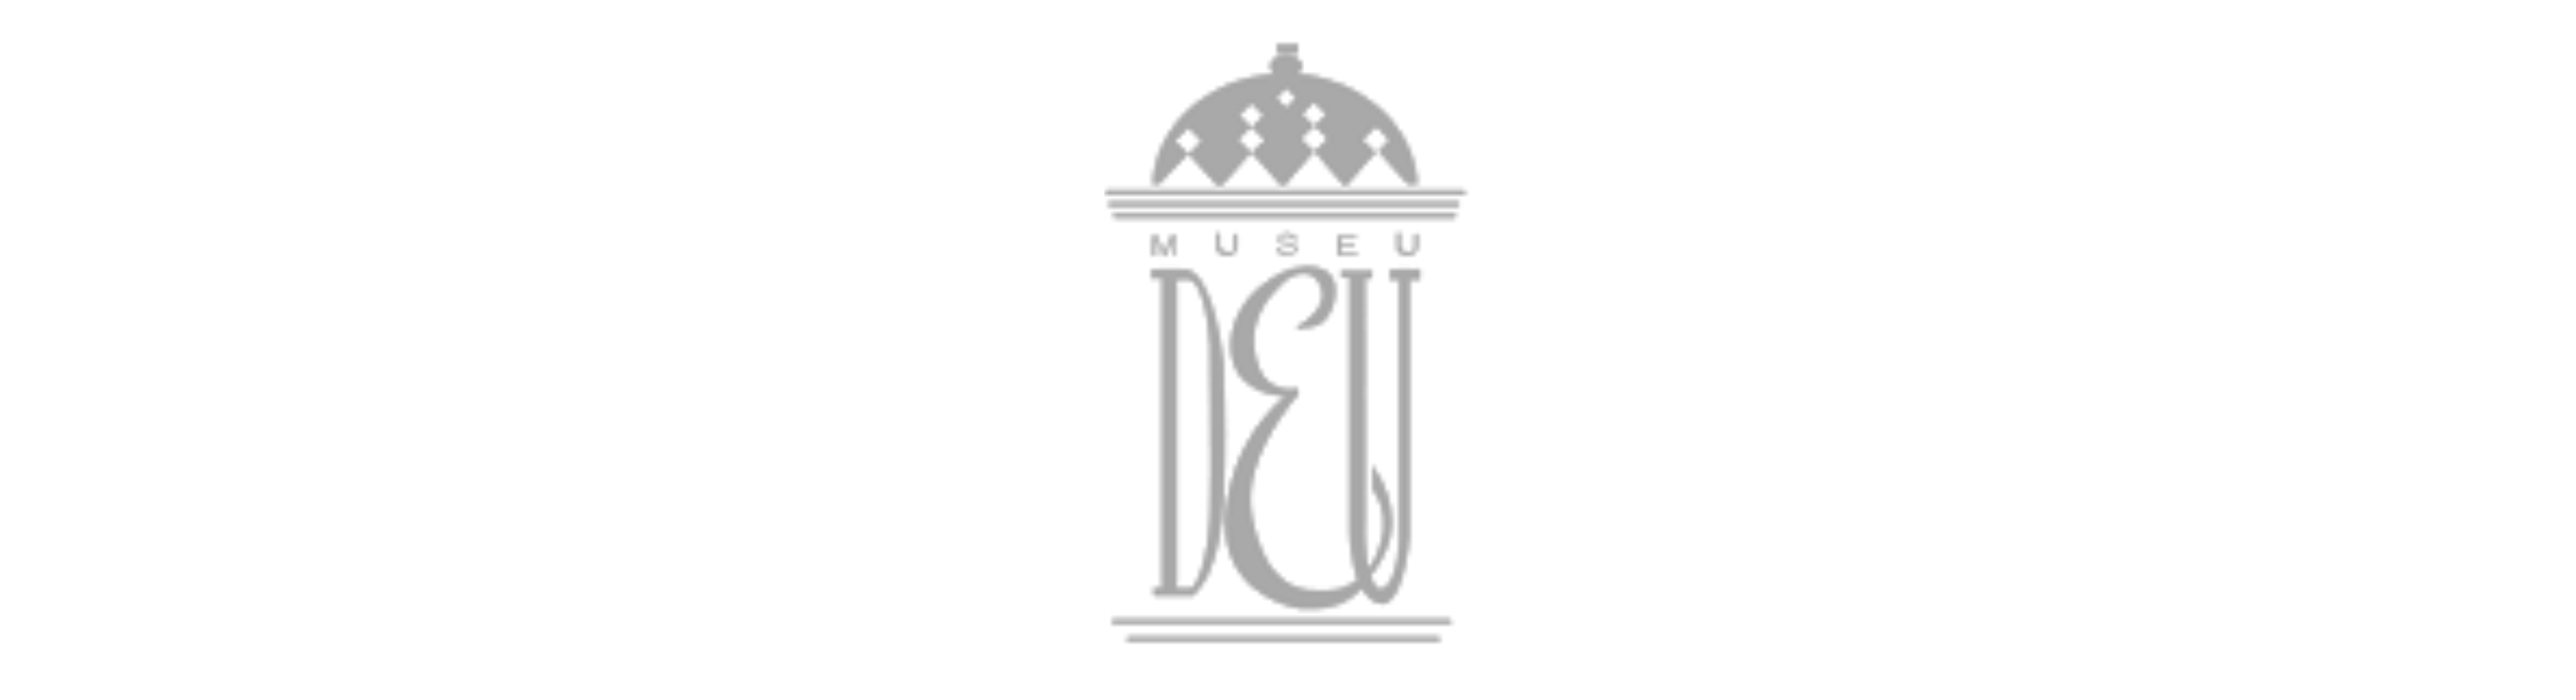 client-logo-10